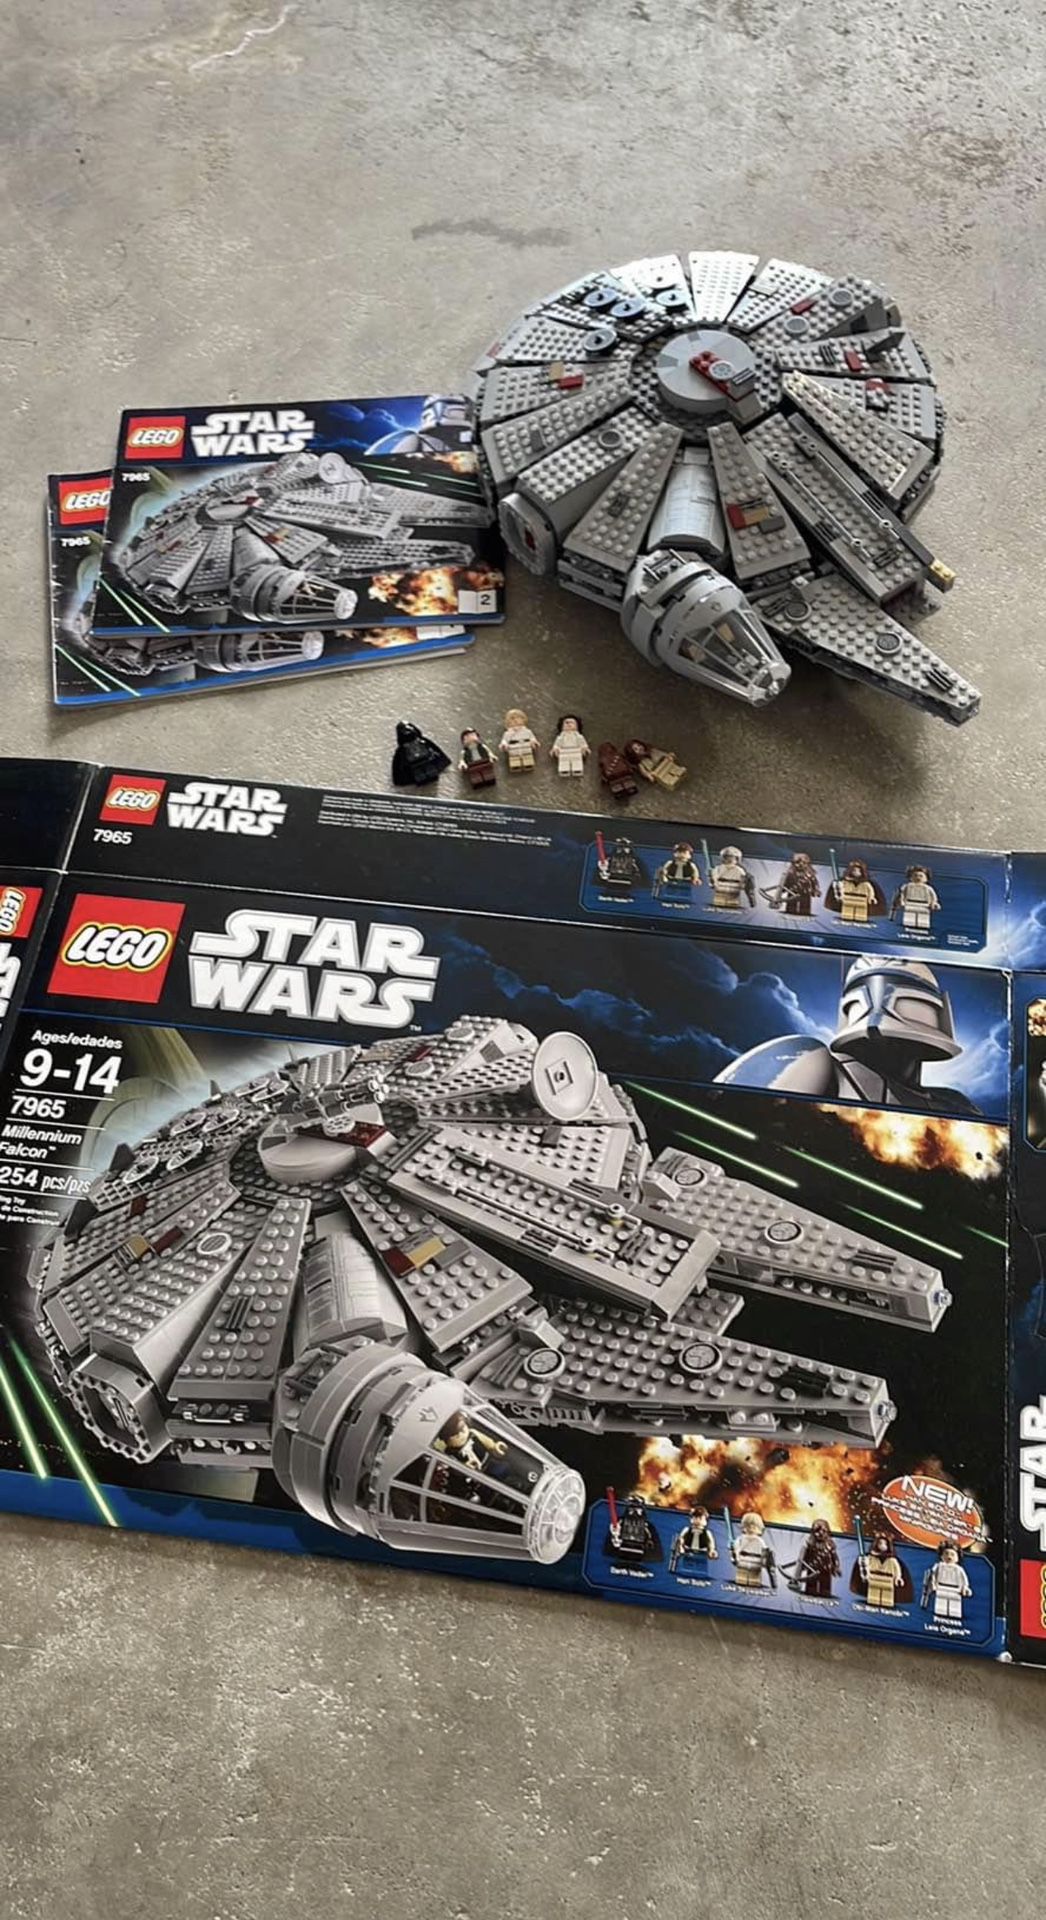 LEGO Star Wars: Millennium Falcon (7965) (x2)